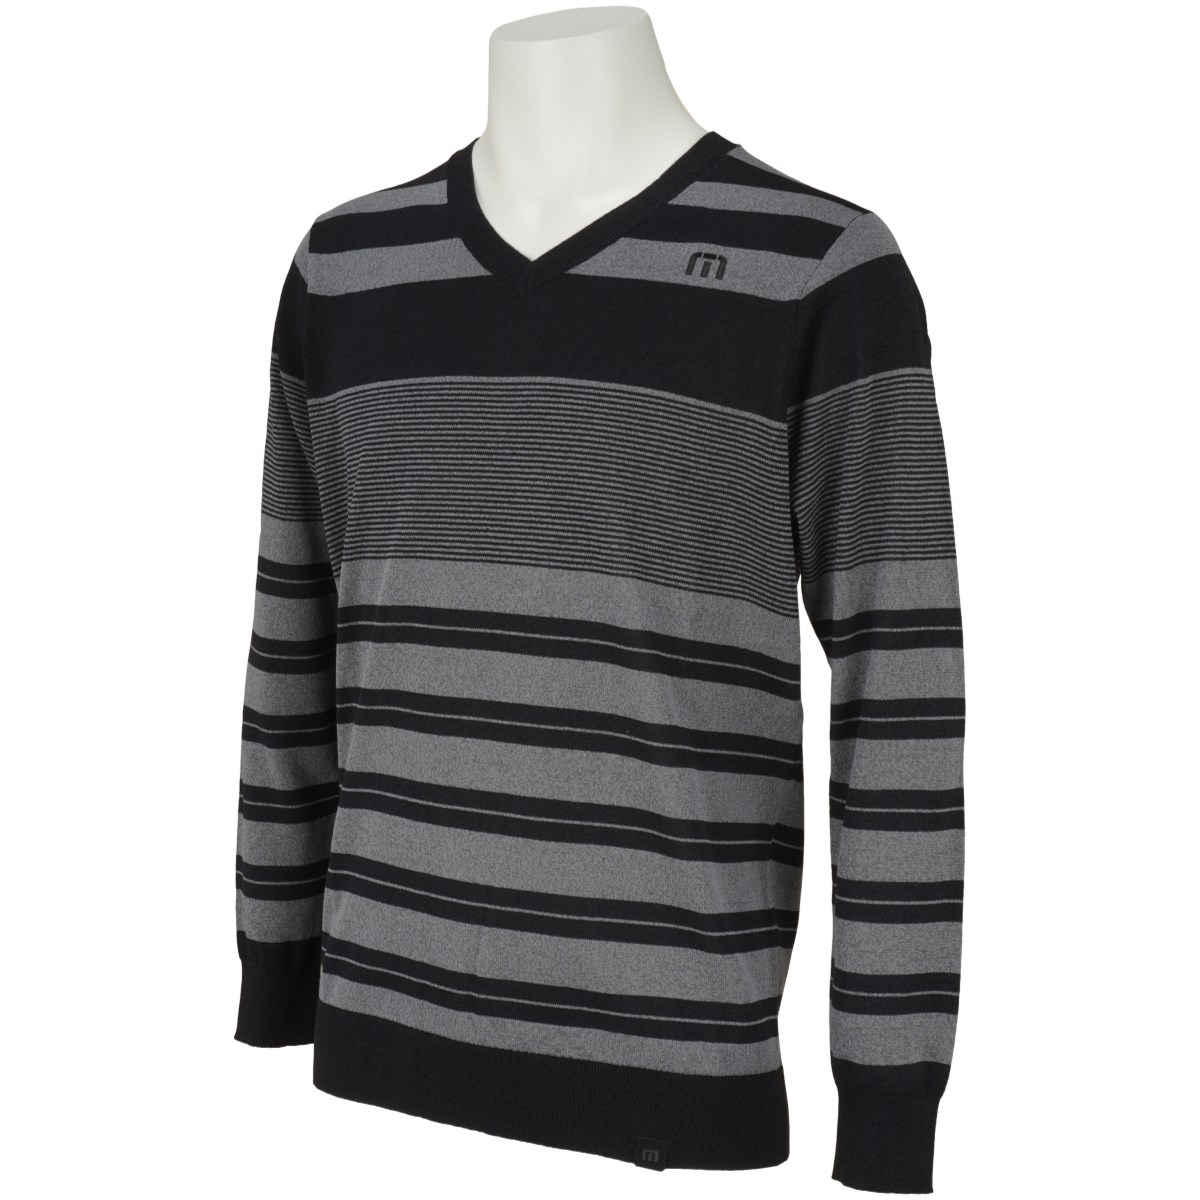 ゴルフウェア Vネック メンズ セーター メンズゴルフウェアの人気商品 